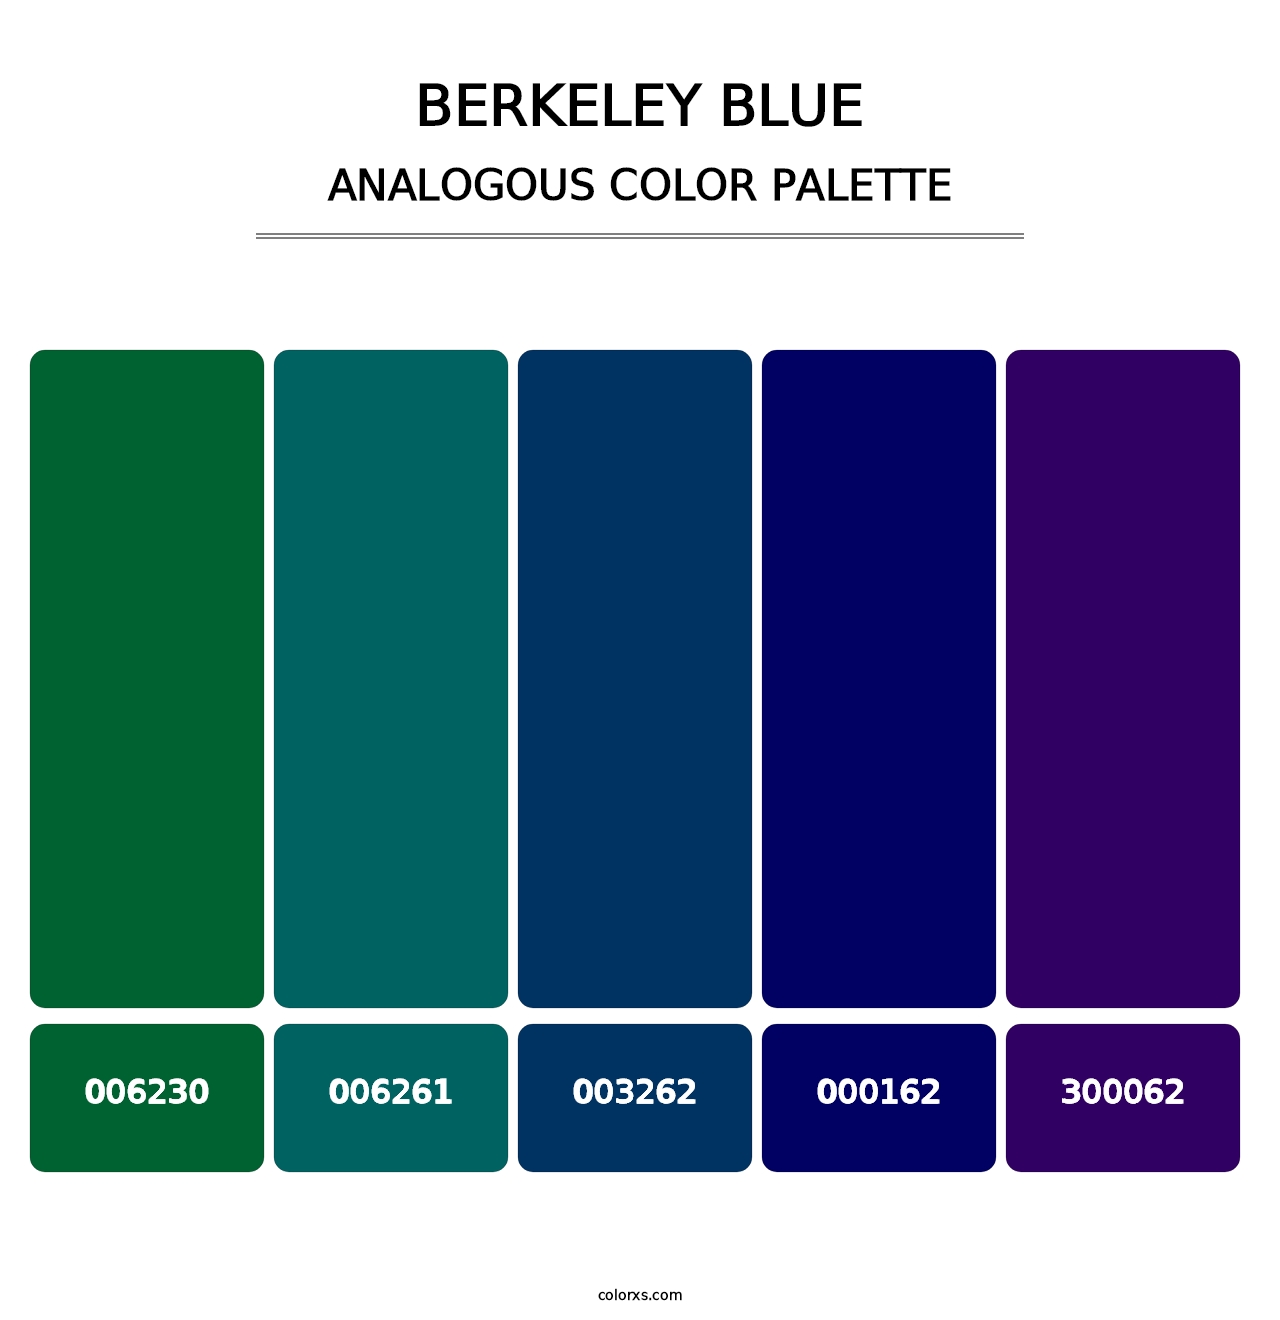 Berkeley Blue - Analogous Color Palette